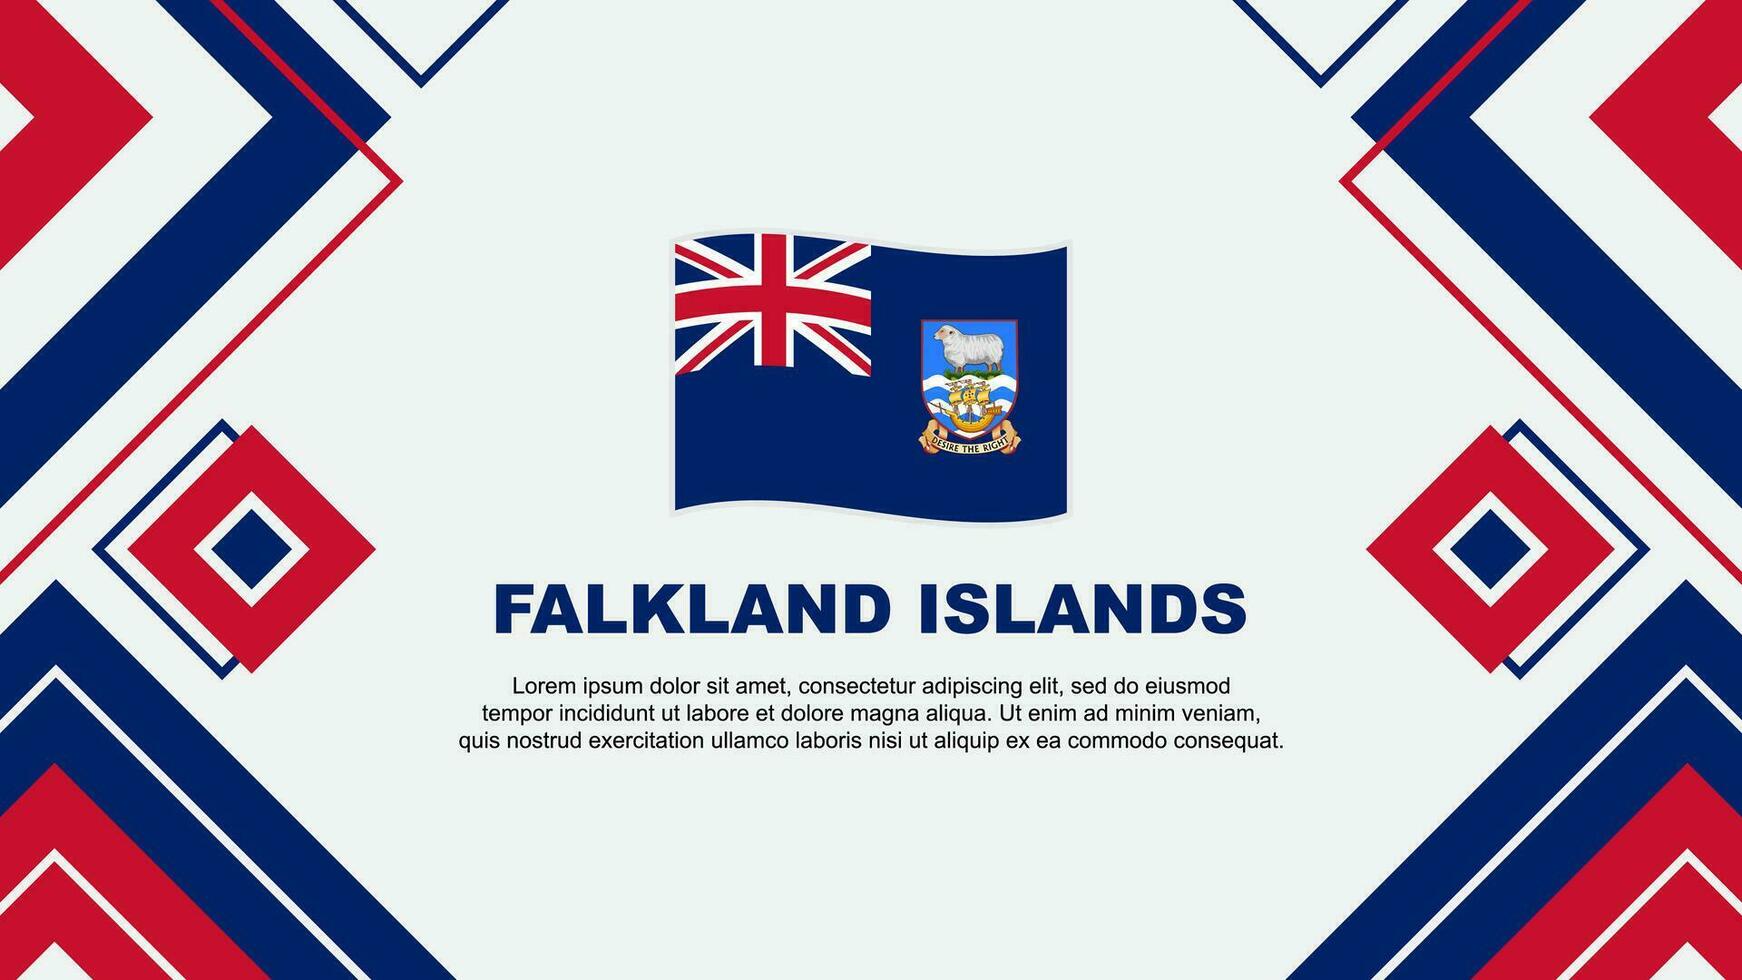 Falkland Islands Flag Abstract Background Design Template. Falkland Islands Independence Day Banner Wallpaper Vector Illustration. Falkland Islands Background